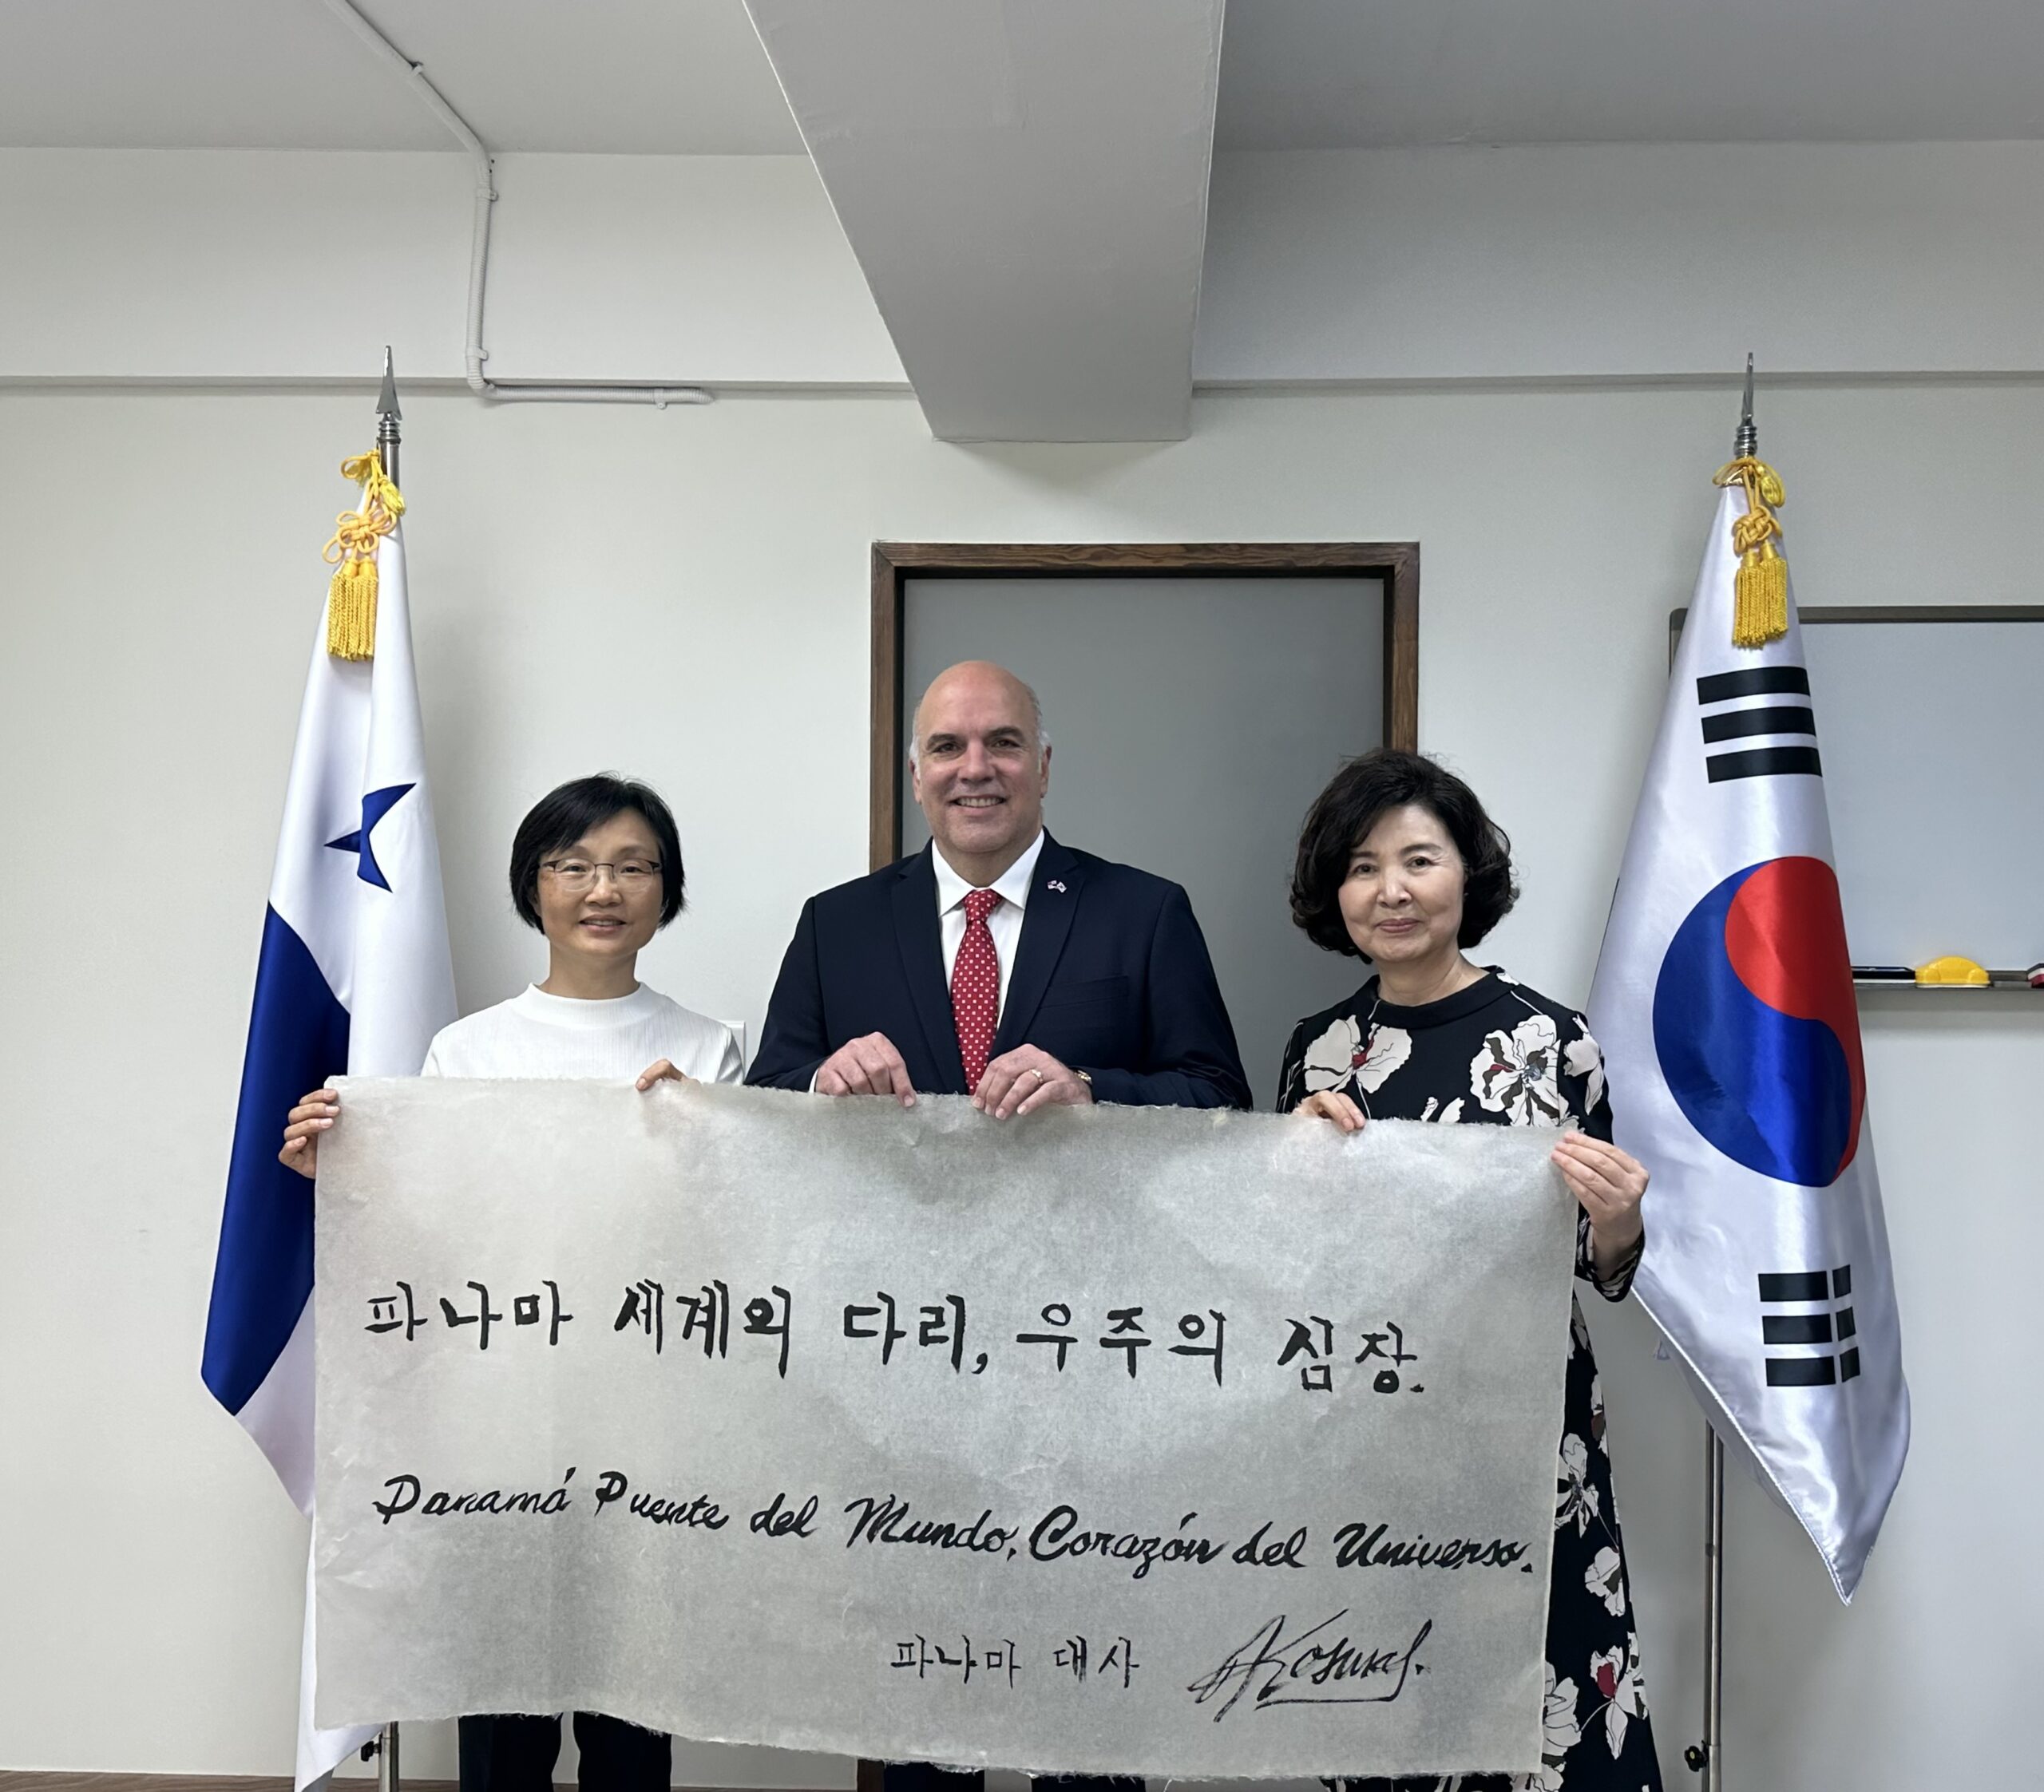 Resaltan a Panamá en pergamino con escritura coreana